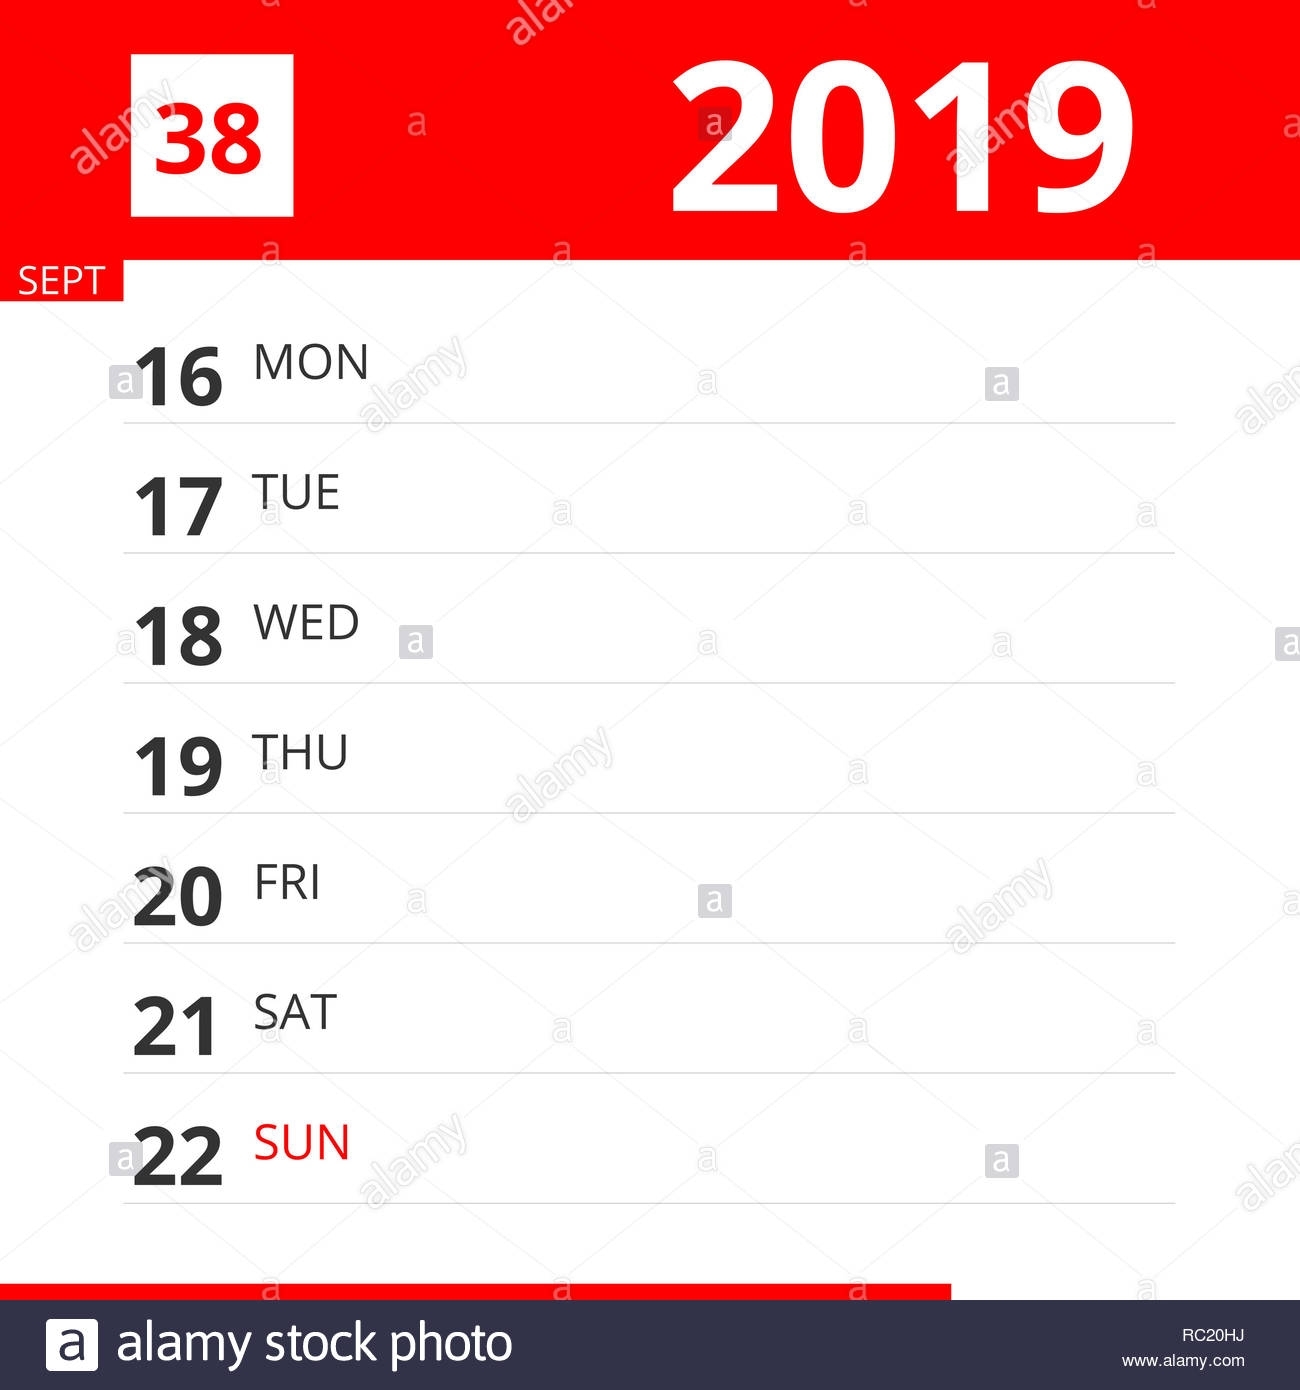 Calendar Planner For Week 38 In 2019, Ends September 22